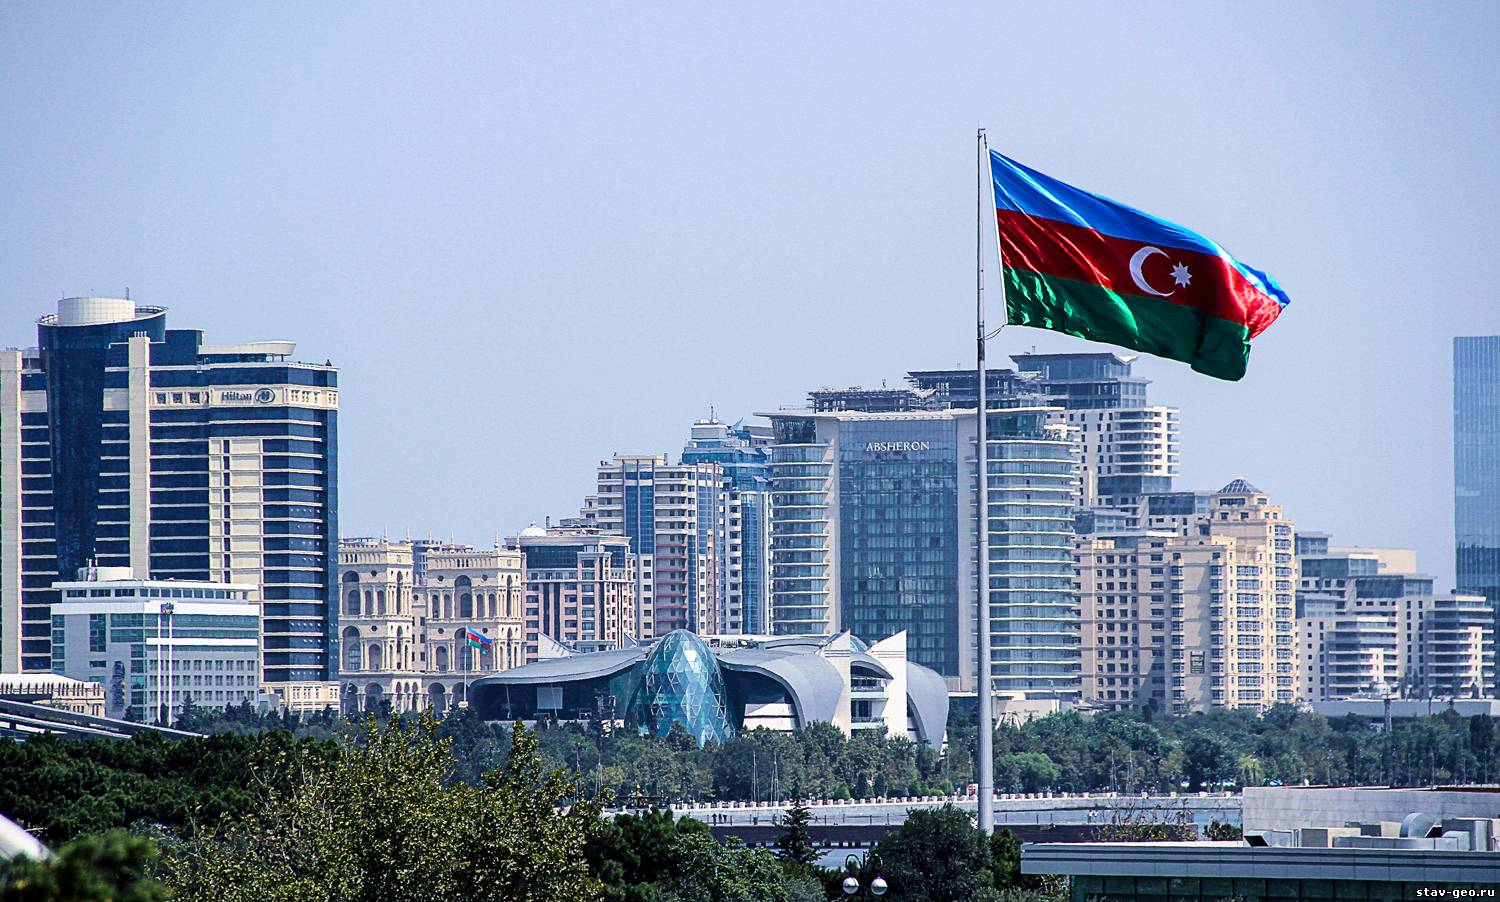 Родной азербайджан. Республика Азербайджан город Баку. Баку столица. Азербайджан (столица – Баку) флаг. Столица Азейбарджан флаг.